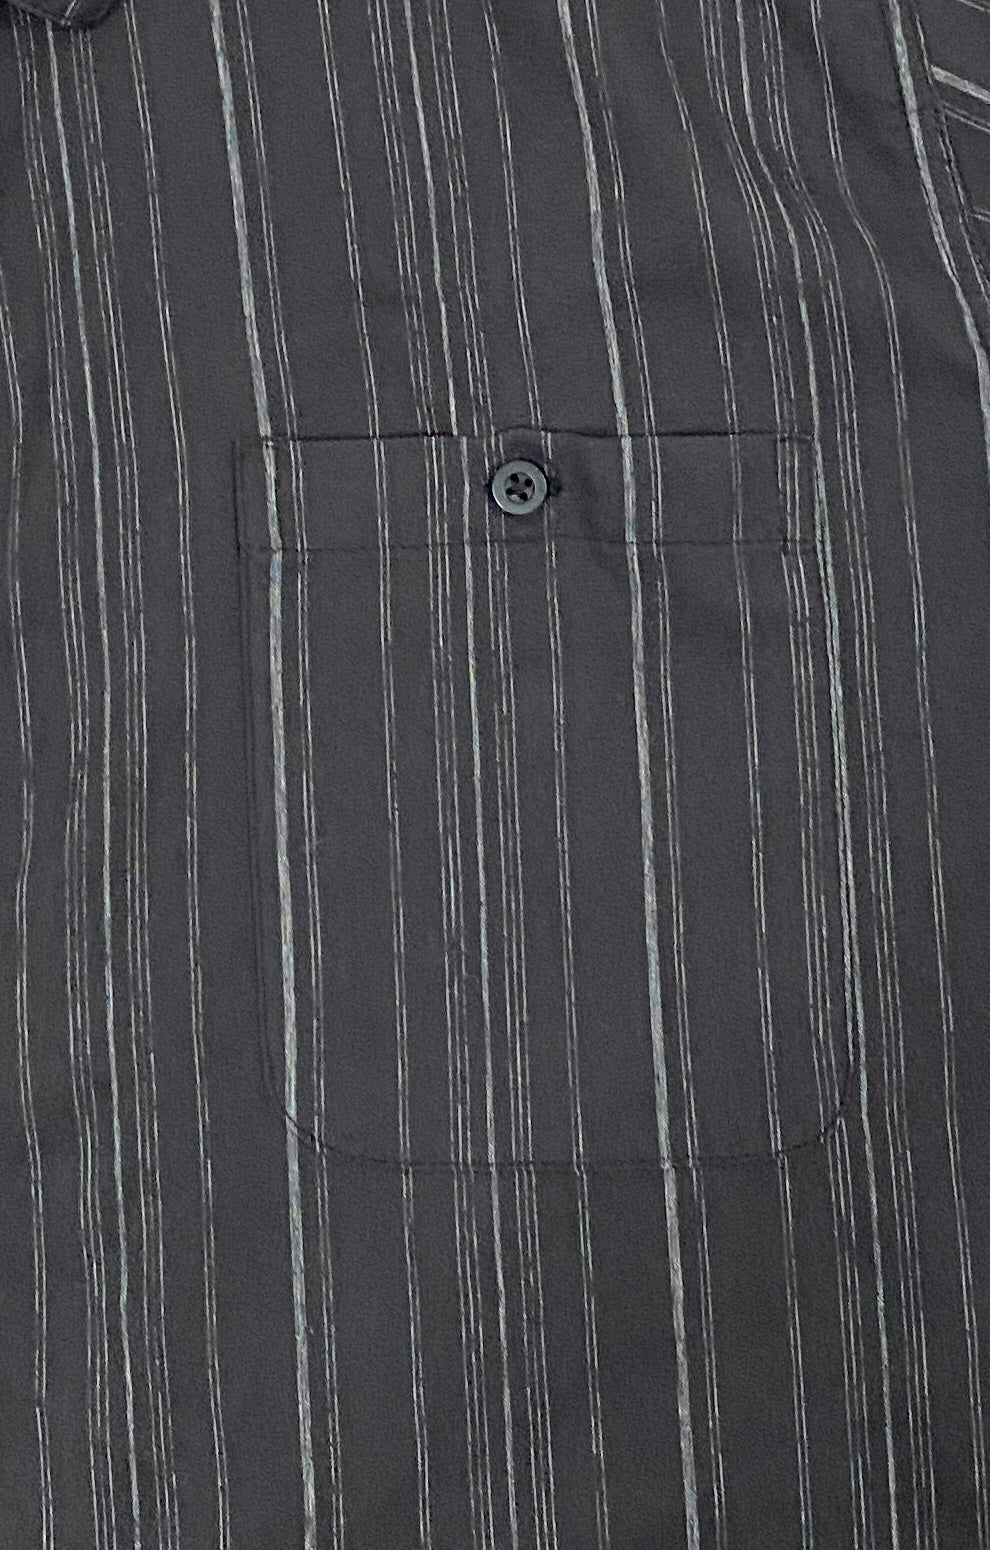 George Men's Shirt Black White Stripes Size 2XL  SKU 000370-5